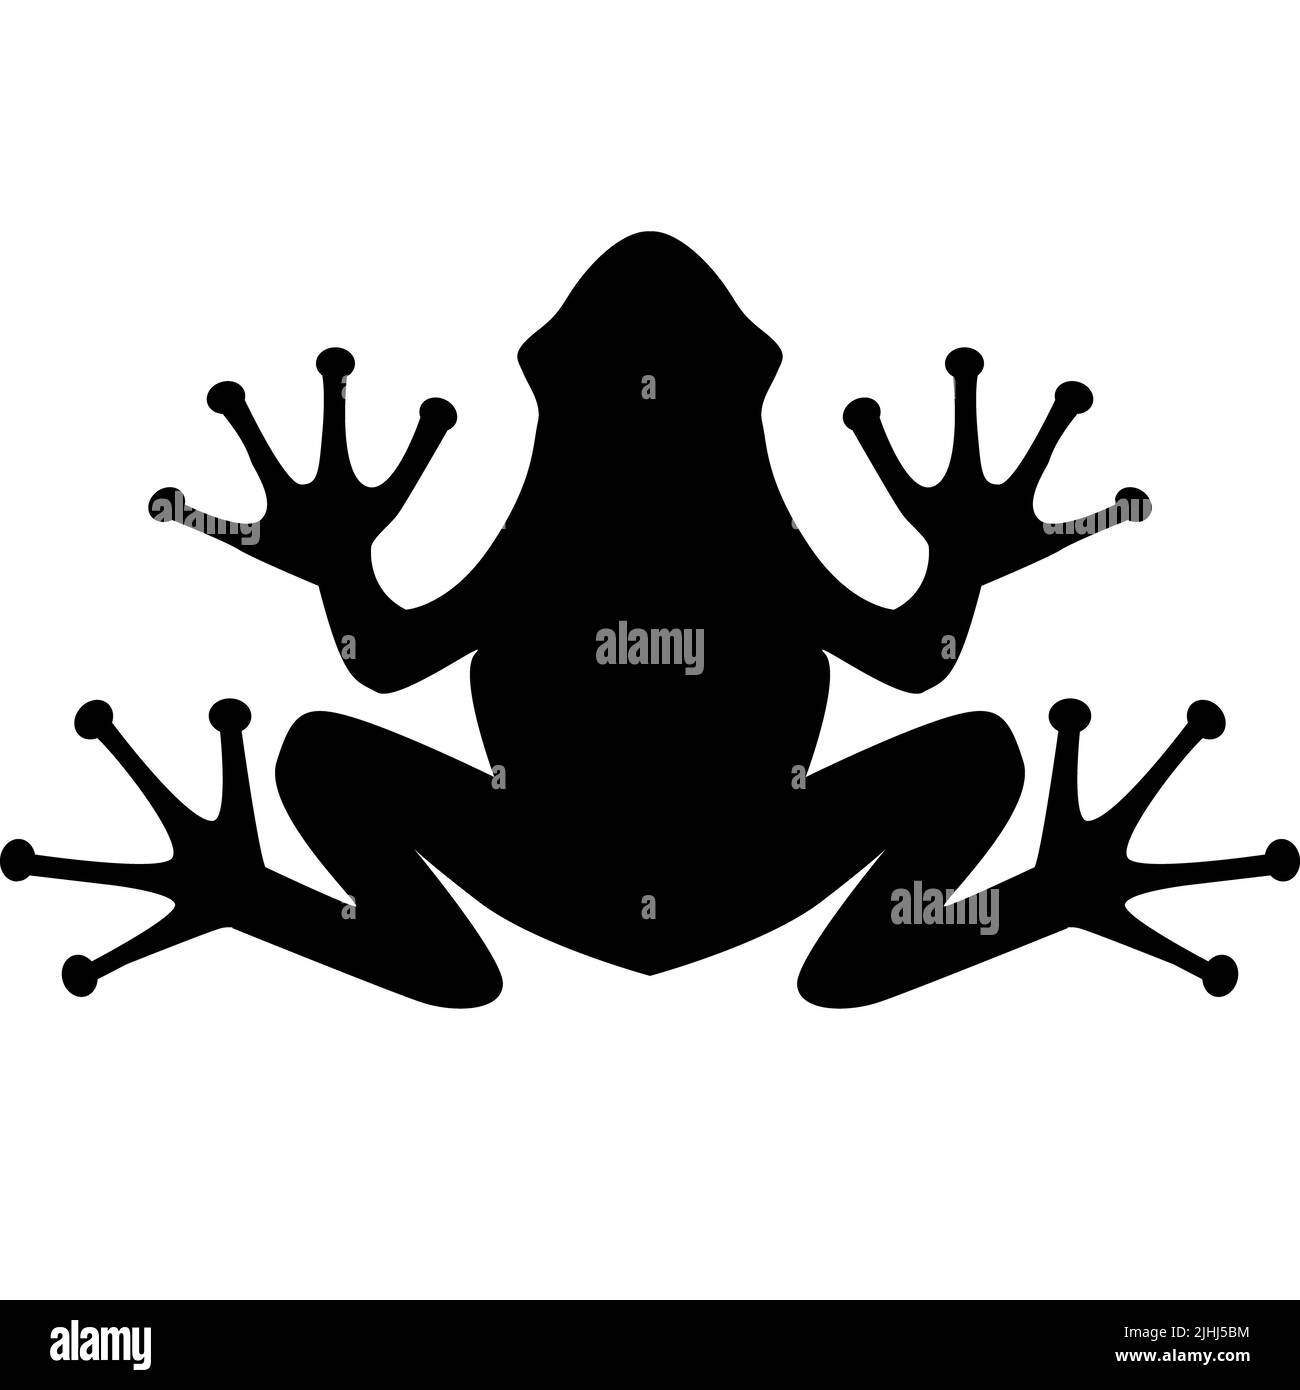 frog black sign on white background. frog icon logo. flat style. Stock Photo